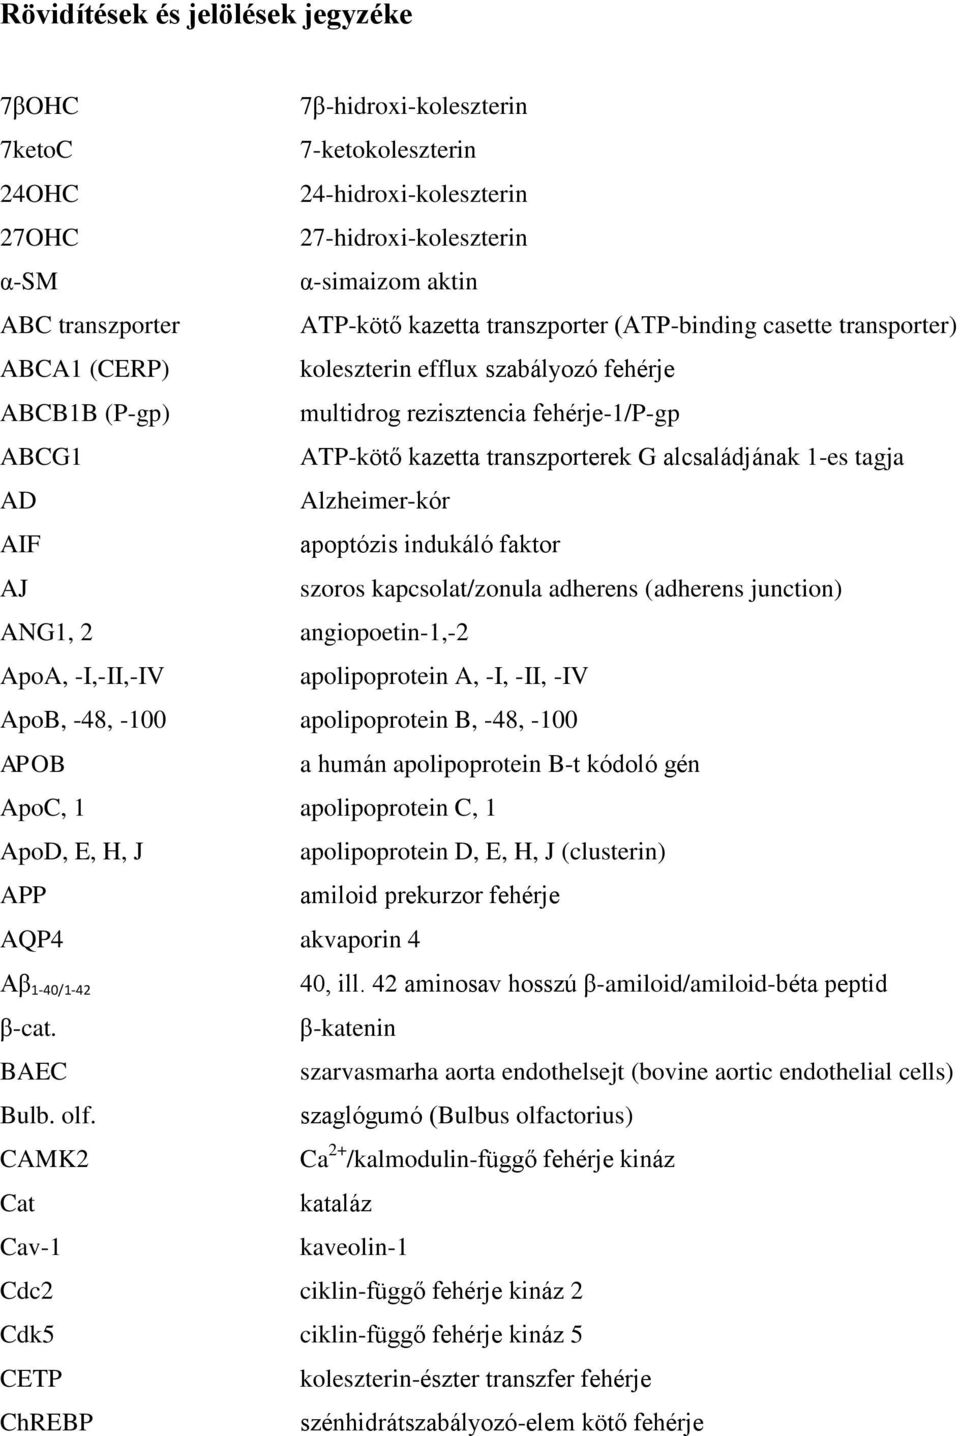 alcsaládjának 1-es tagja AD Alzheimer-kór AIF apoptózis indukáló faktor AJ szoros kapcsolat/zonula adherens (adherens junction) ANG1, 2 angiopoetin-1,-2 ApoA, -I,-II,-IV apolipoprotein A, -I, -II,